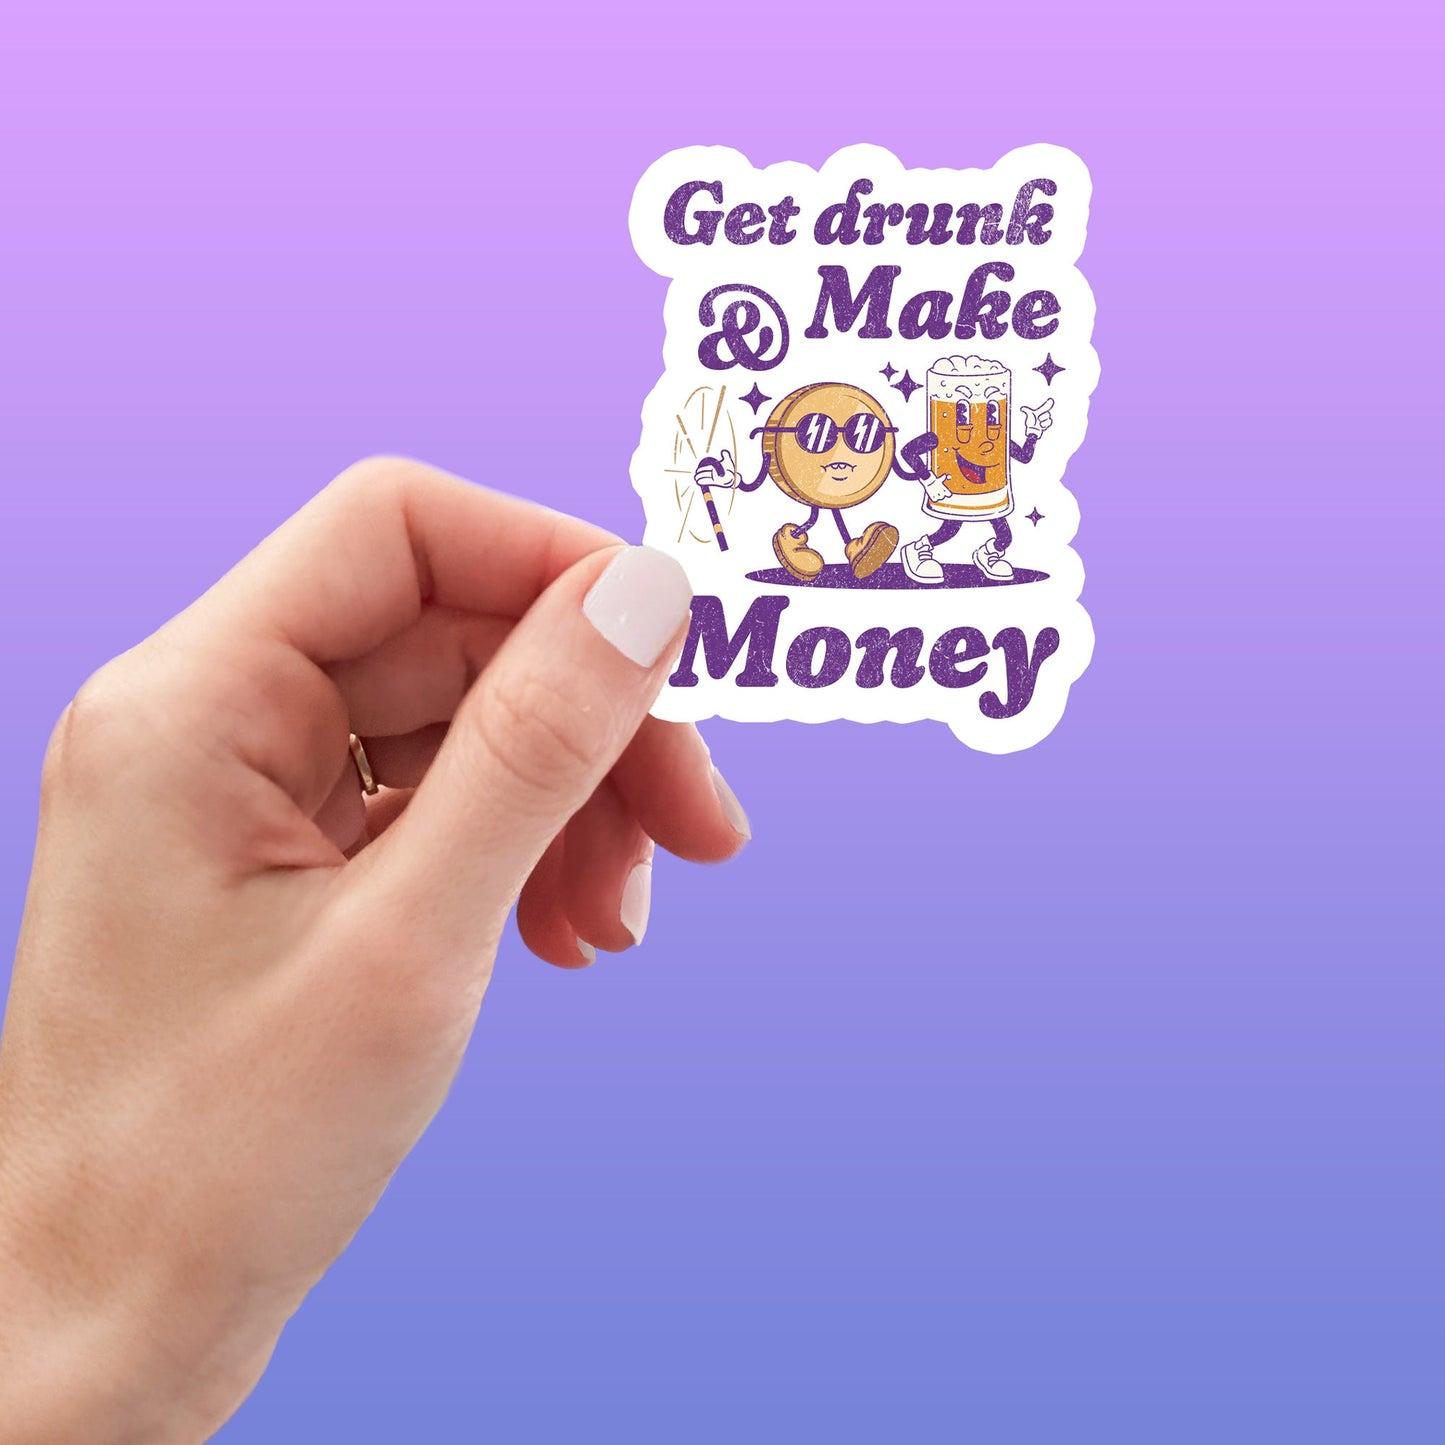 Get Drunk & Make Money Funny Sticker-sticker-Crimson and Clover Studio